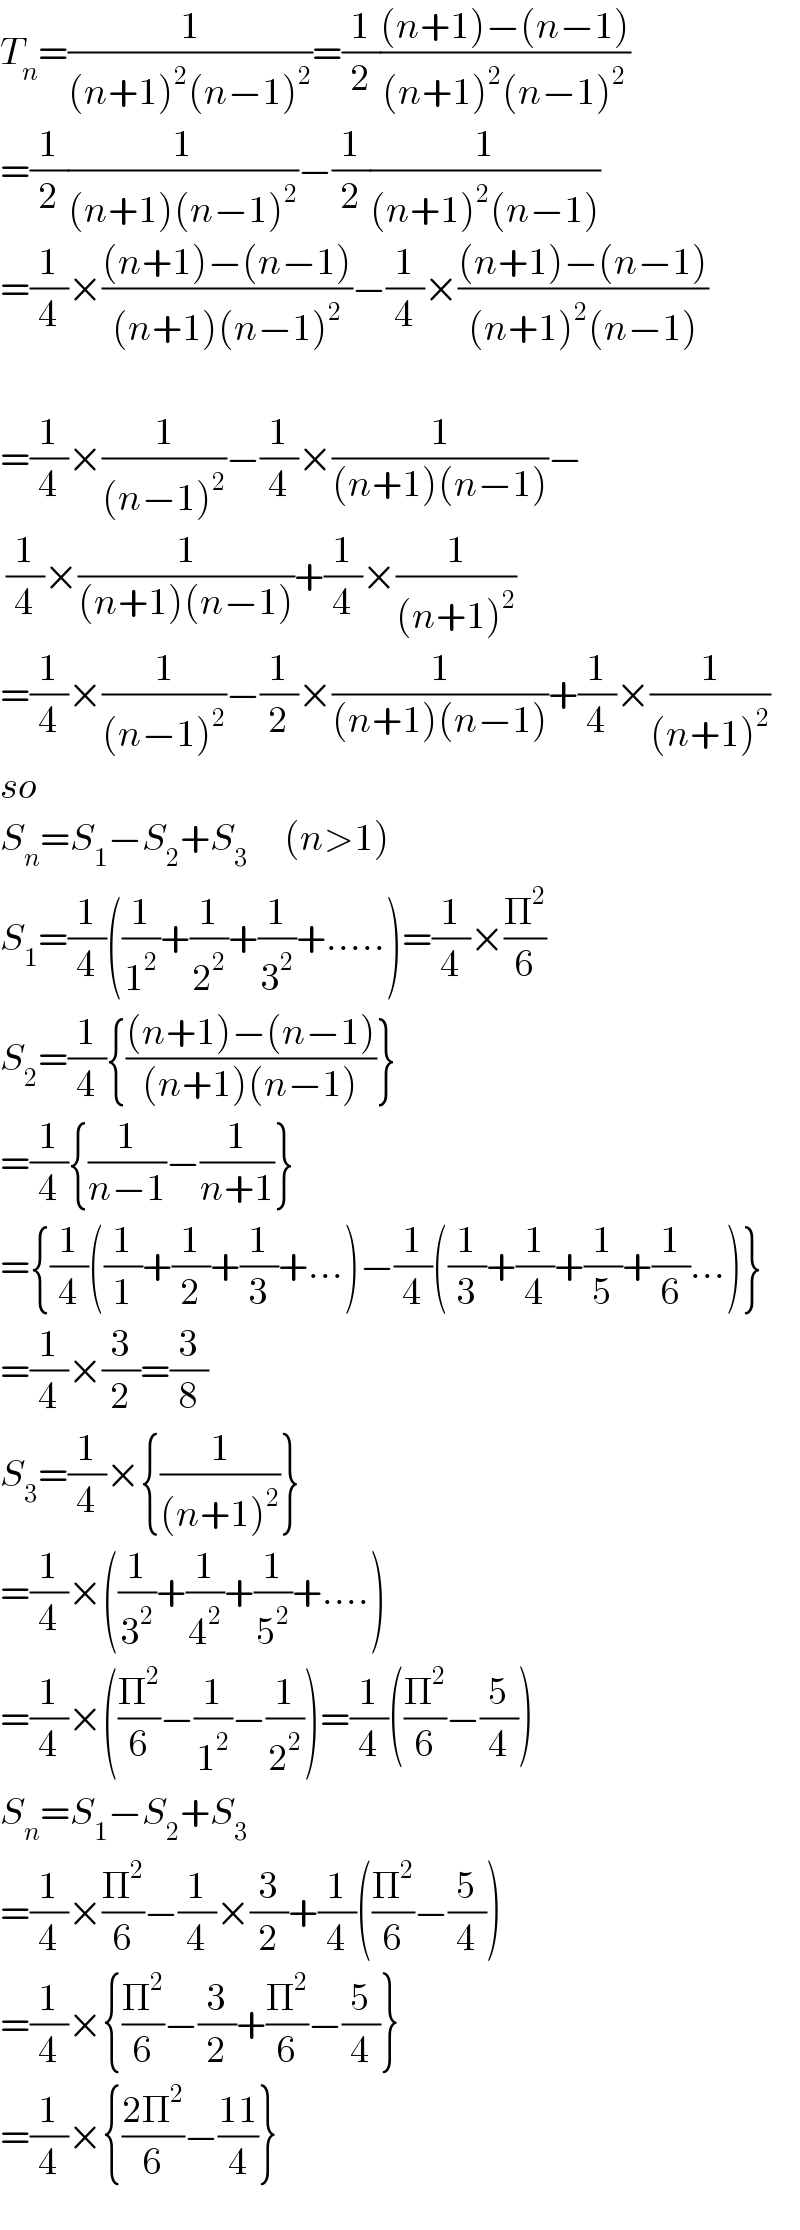 T_n =(1/((n+1)^2 (n−1)^2 ))=(1/2)(((n+1)−(n−1))/((n+1)^2 (n−1)^2 ))  =(1/2)(1/((n+1)(n−1)^2 ))−(1/2)(1/((n+1)^2 (n−1)))  =(1/4)×(((n+1)−(n−1))/((n+1)(n−1)^2 ))−(1/4)×(((n+1)−(n−1))/((n+1)^2 (n−1)))    =(1/4)×(1/((n−1)^2 ))−(1/4)×(1/((n+1)(n−1)))−   (1/4)×(1/((n+1)(n−1)))+(1/4)×(1/((n+1)^2 ))  =(1/4)×(1/((n−1)^2 ))−(1/2)×(1/((n+1)(n−1)))+(1/4)×(1/((n+1)^2 ))  so  S_n =S_1 −S_2 +S_3       (n>1)  S_1 =(1/4)((1/1^2 )+(1/2^2 )+(1/3^2 )+.....)=(1/4)×(Π^2 /6)  S_2 =(1/4){(((n+1)−(n−1))/((n+1)(n−1)))}  =(1/4){(1/(n−1))−(1/(n+1))}  ={(1/4)((1/1)+(1/2)+(1/3)+...)−(1/4)((1/3)+(1/4)+(1/5)+(1/6)...)}  =(1/4)×(3/2)=(3/8)  S_3 =(1/4)×{(1/((n+1)^2 ))}  =(1/4)×((1/3^2 )+(1/4^2 )+(1/5^2 )+....)  =(1/4)×((Π^2 /6)−(1/1^2 )−(1/2^2 ))=(1/4)((Π^2 /6)−(5/4))  S_n =S_1 −S_2 +S_3   =(1/4)×(Π^2 /6)−(1/4)×(3/2)+(1/4)((Π^2 /6)−(5/4))  =(1/4)×{(Π^2 /6)−(3/2)+(Π^2 /6)−(5/4)}  =(1/4)×{((2Π^2 )/6)−((11)/4)}  